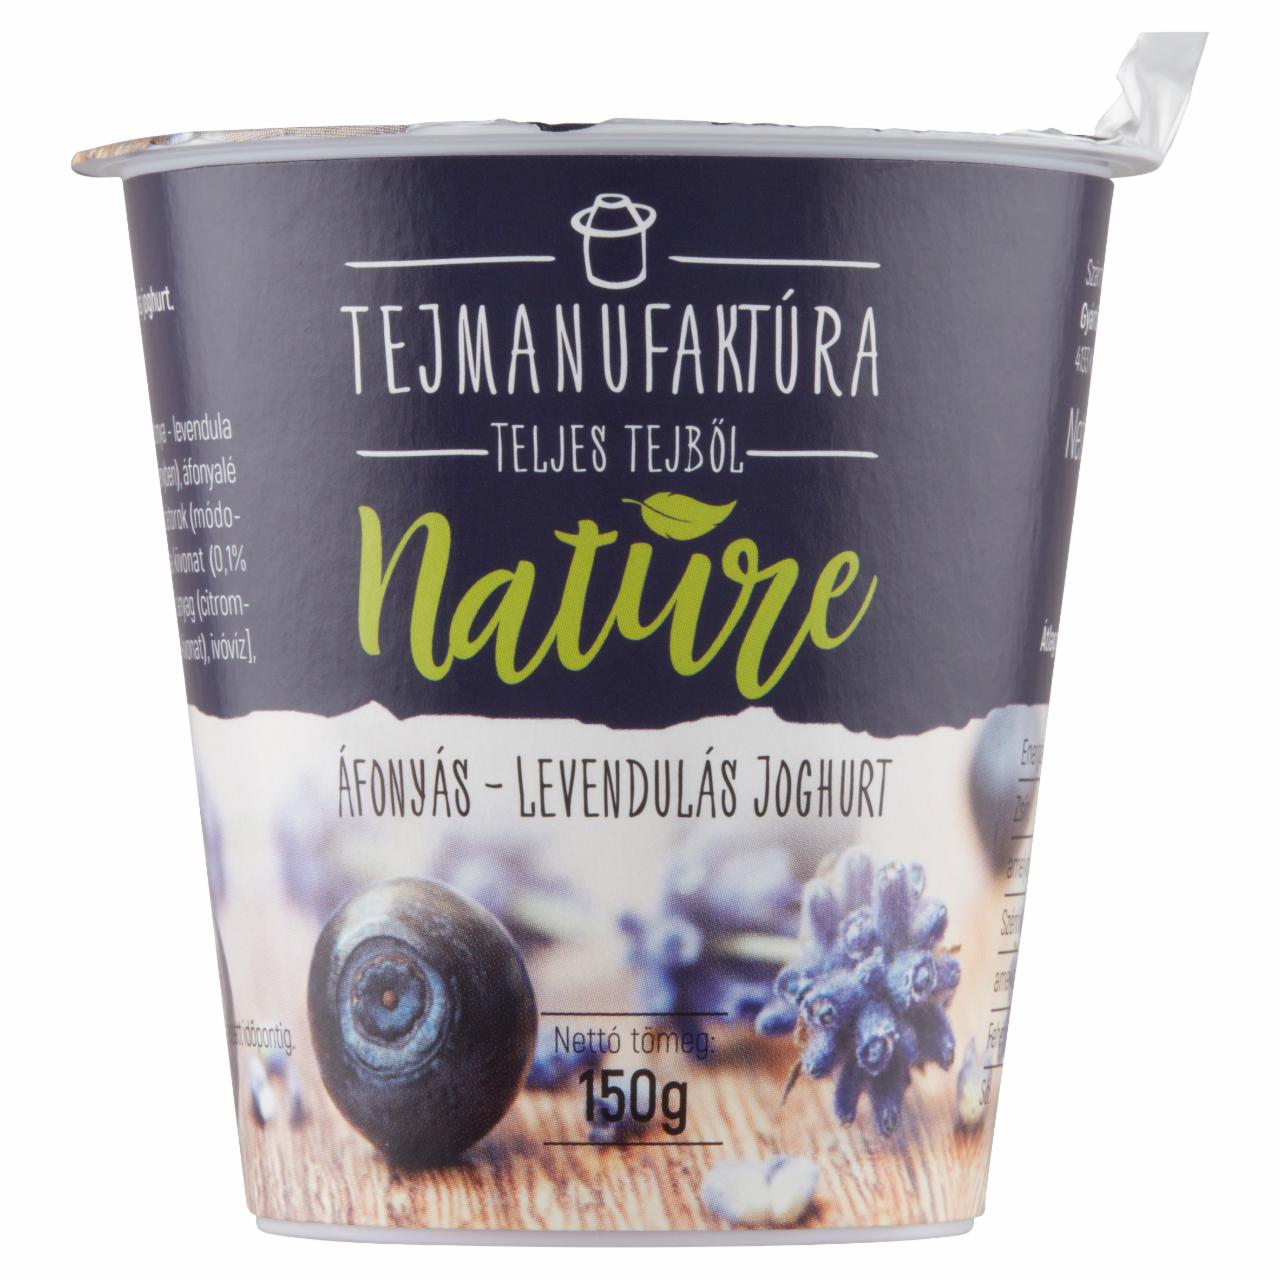 Képek - Tejmanufaktúra Nature áfonyás-levendulás joghurt 150 g